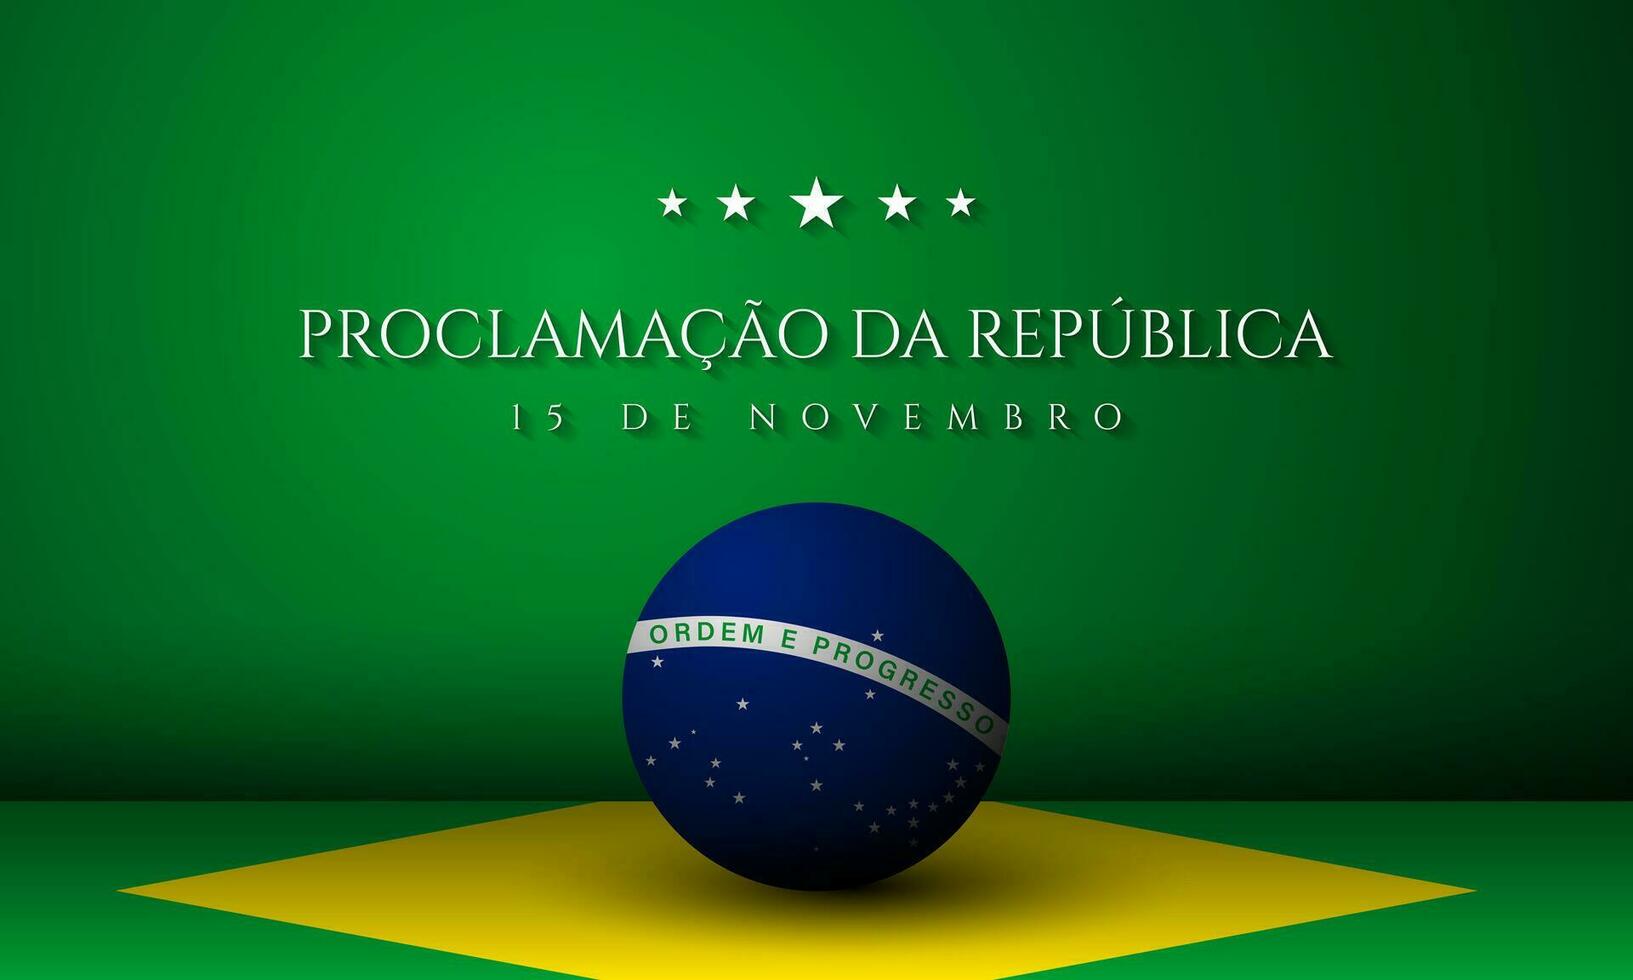 projeto de plano de fundo do dia da república do brasil. vetor